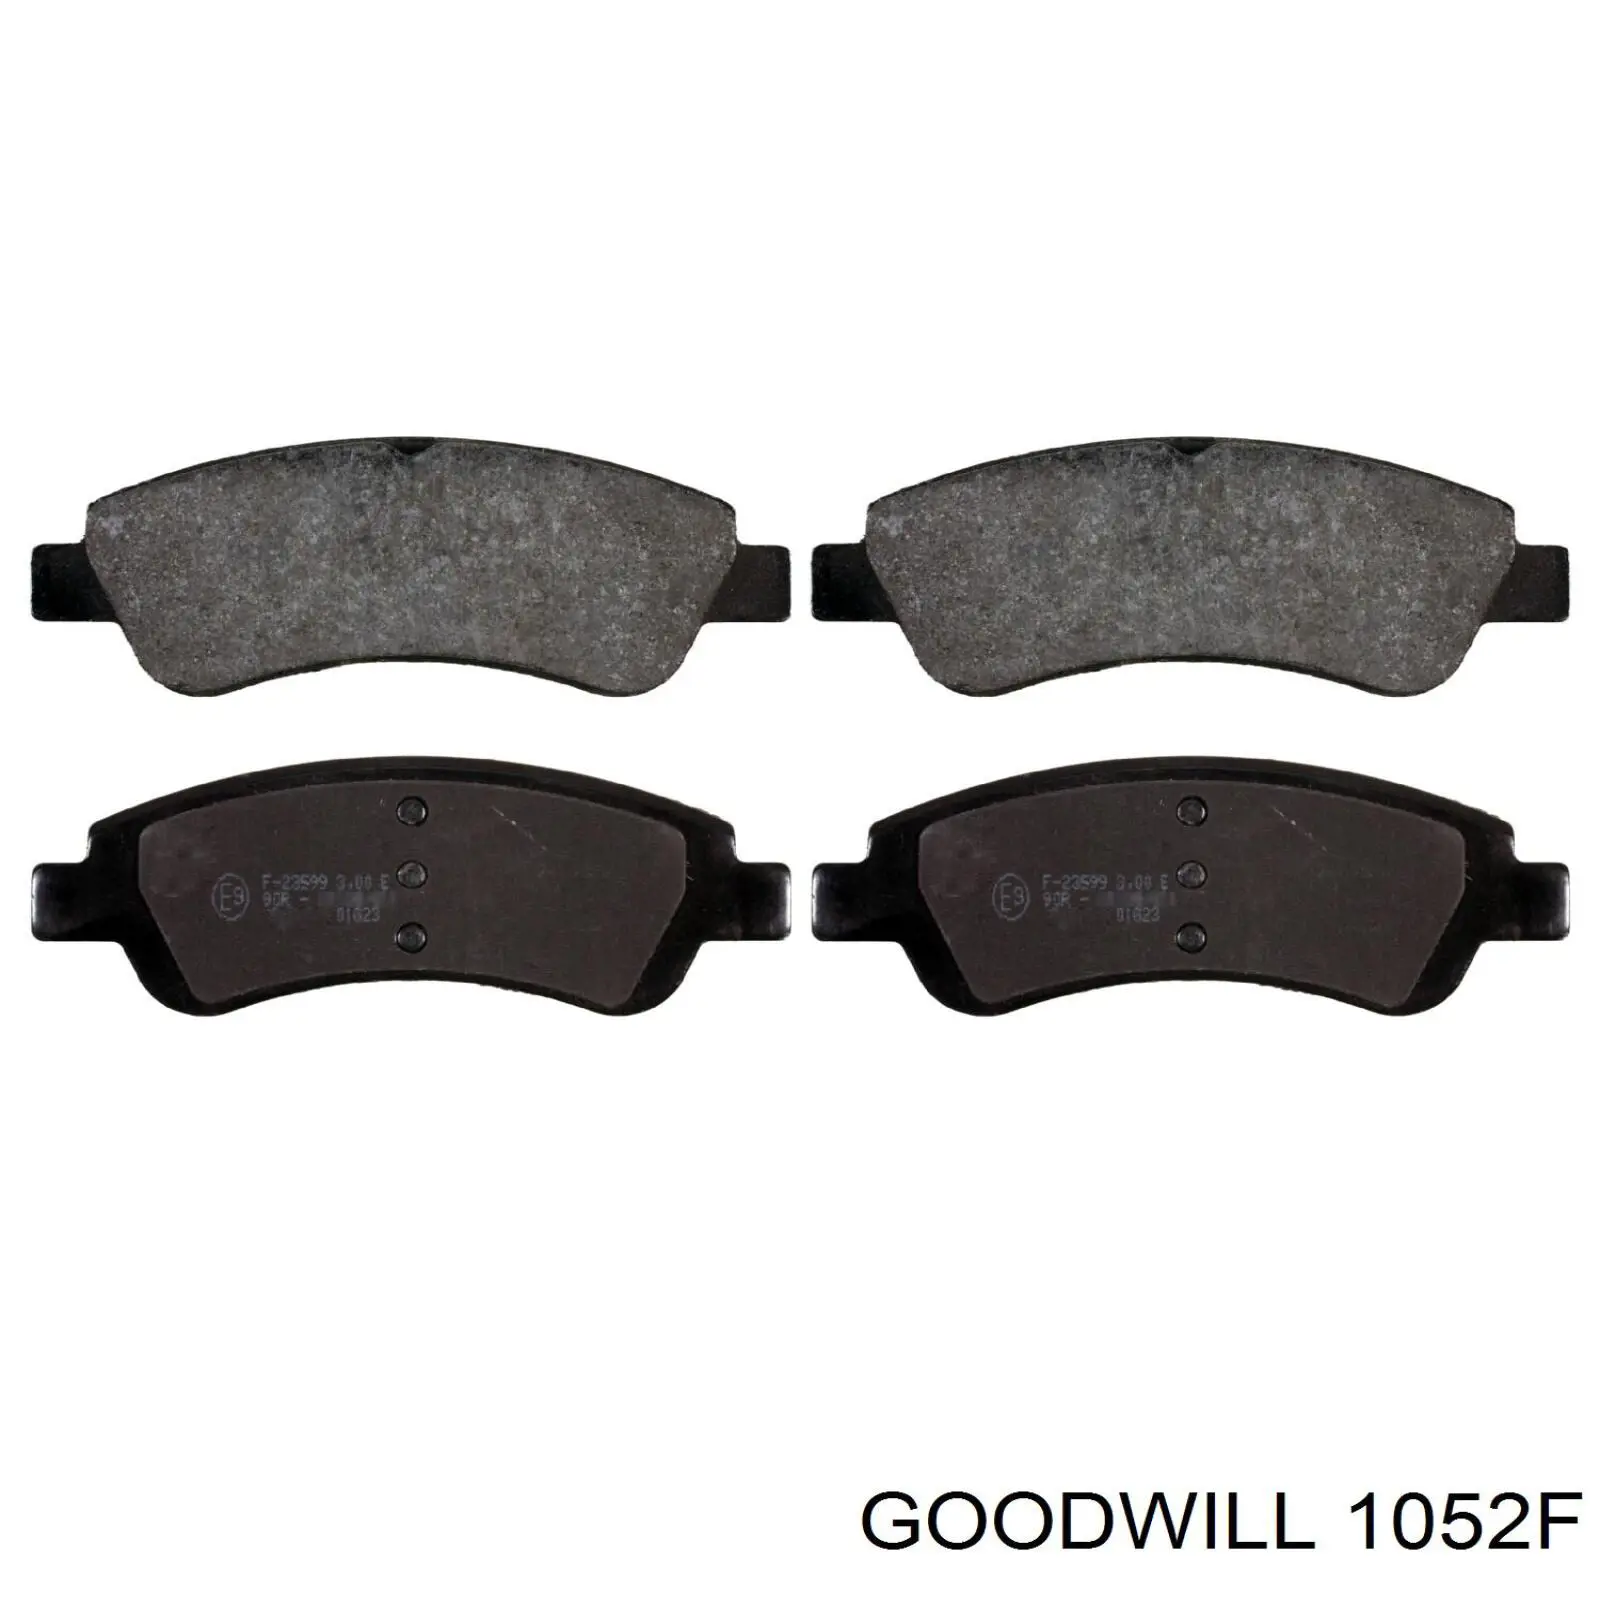 1052F Goodwill колодки тормозные передние дисковые